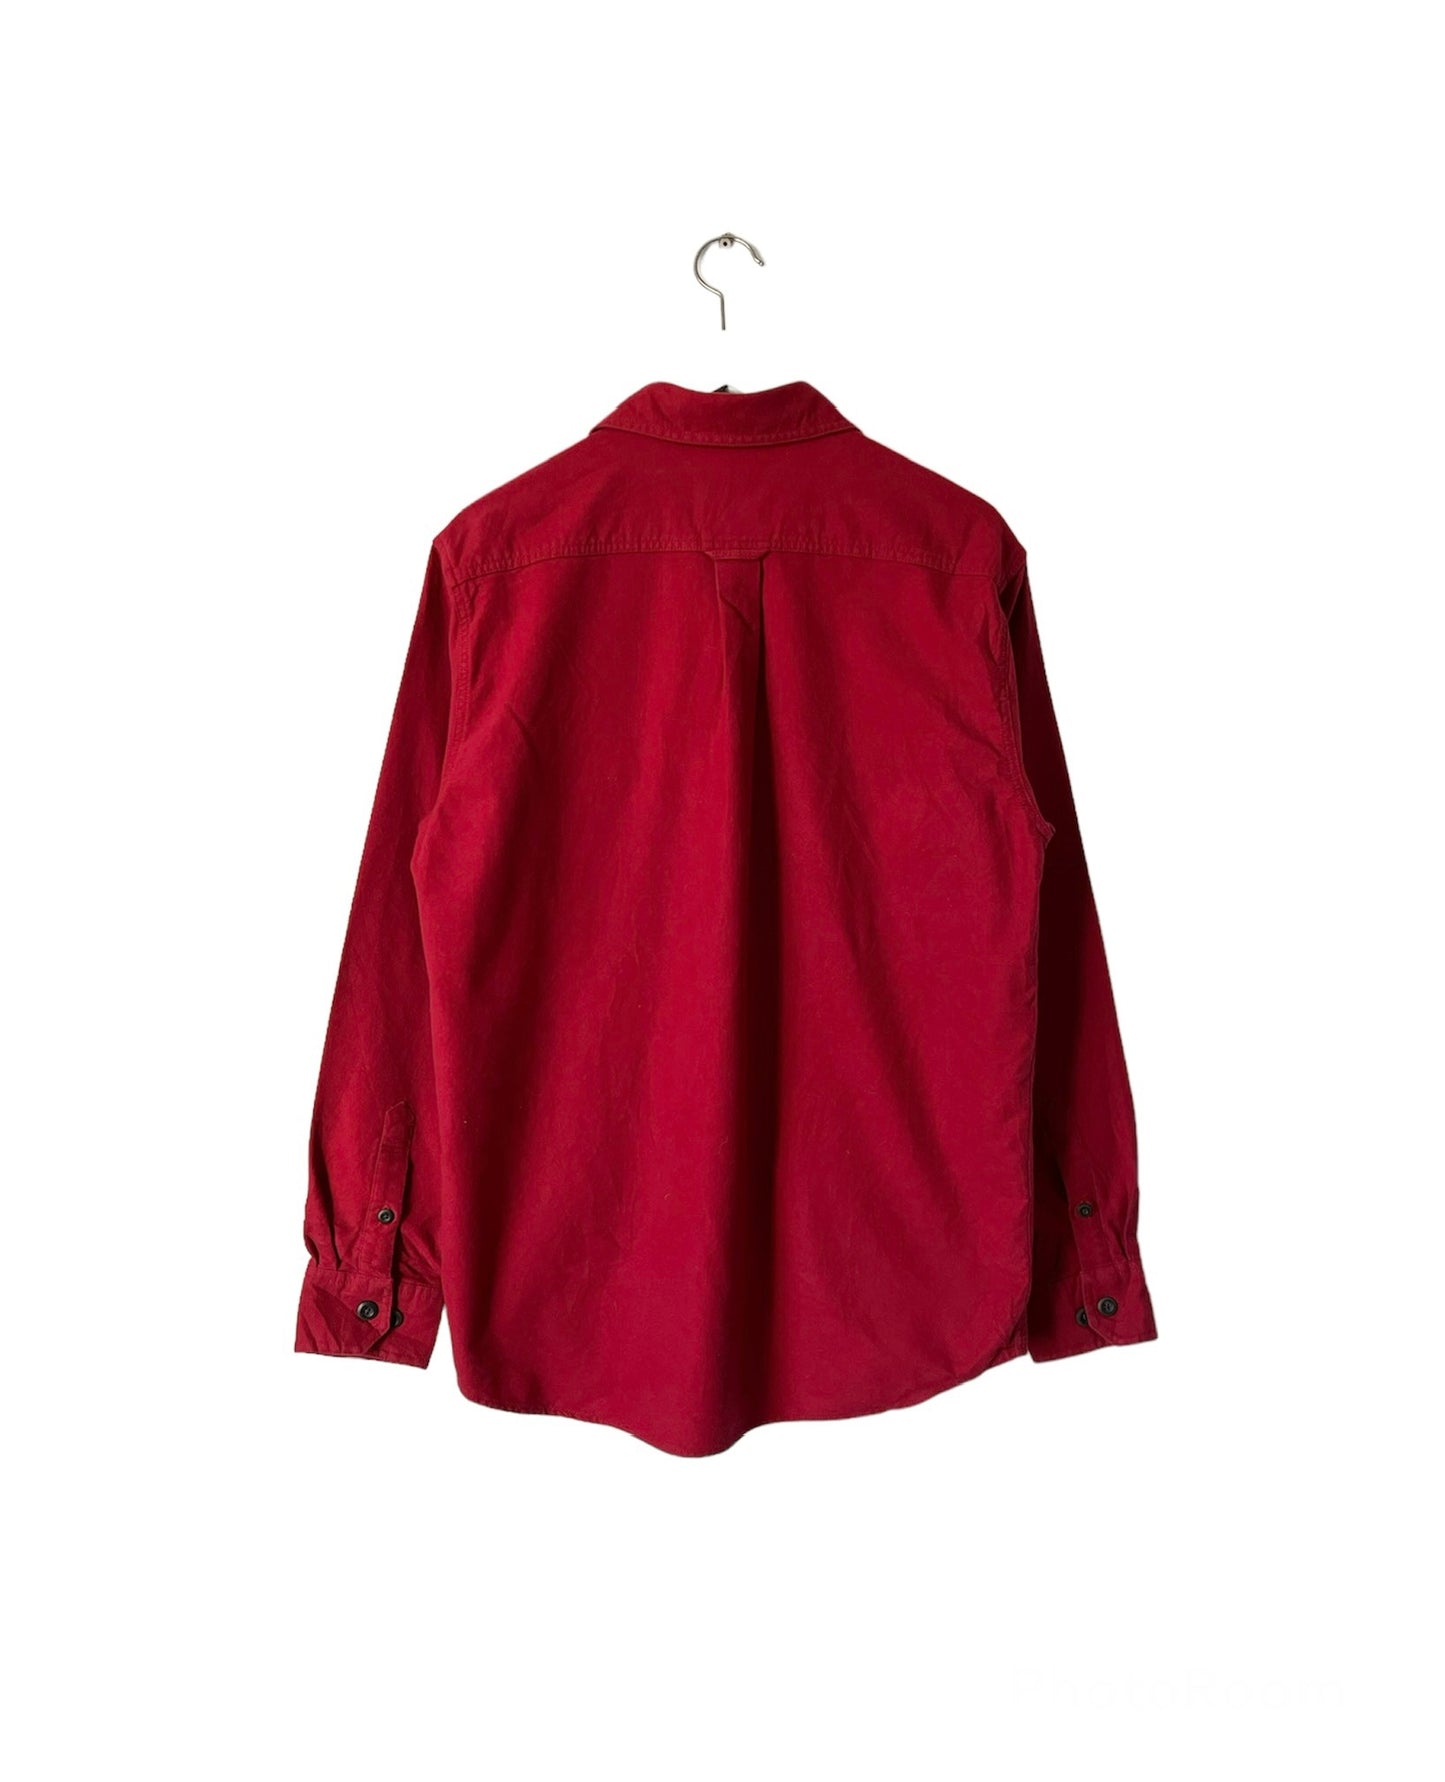 Vintage 90's Eddie Bauer Chamois Cotton Shirt Crimson - Medium